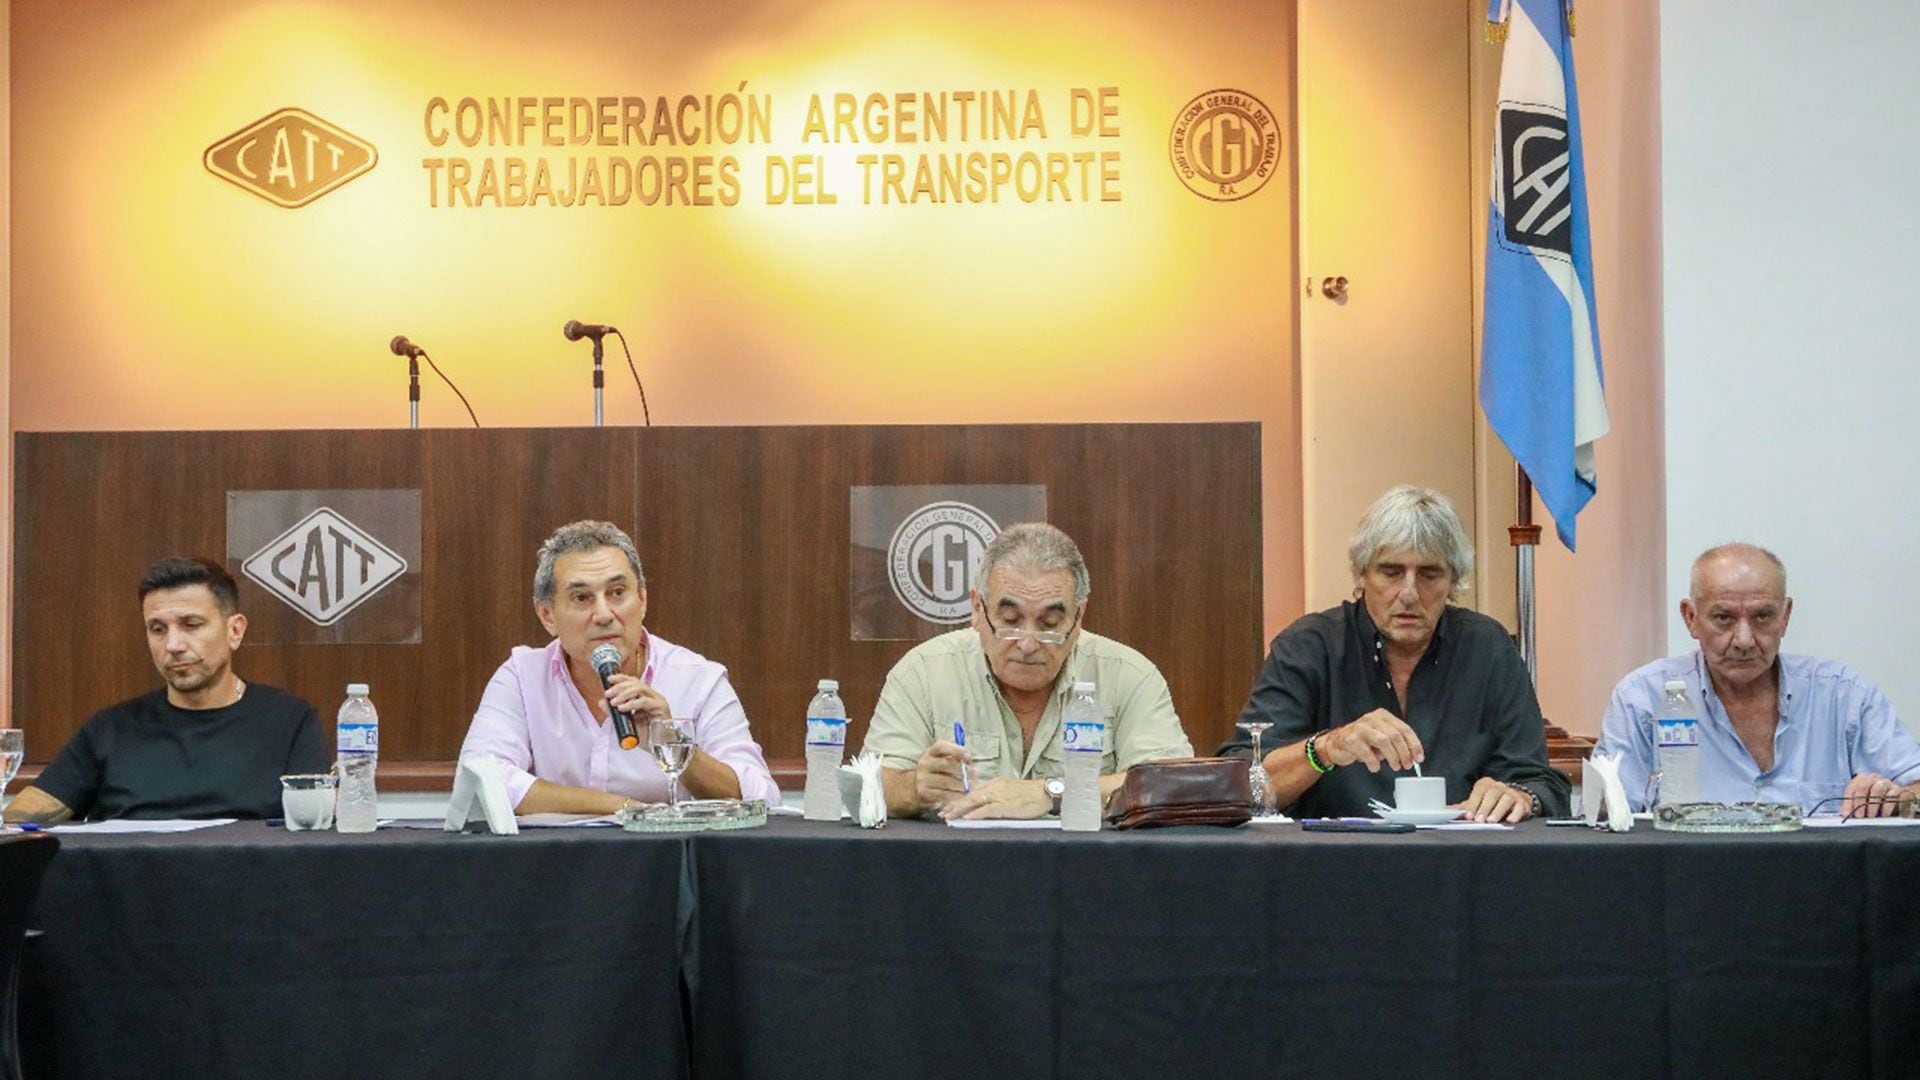 Reunión de la Confederación de Trabajadores del Transporte (CATT), presidida por Sergio Sasia y Juan Carlos Schmid